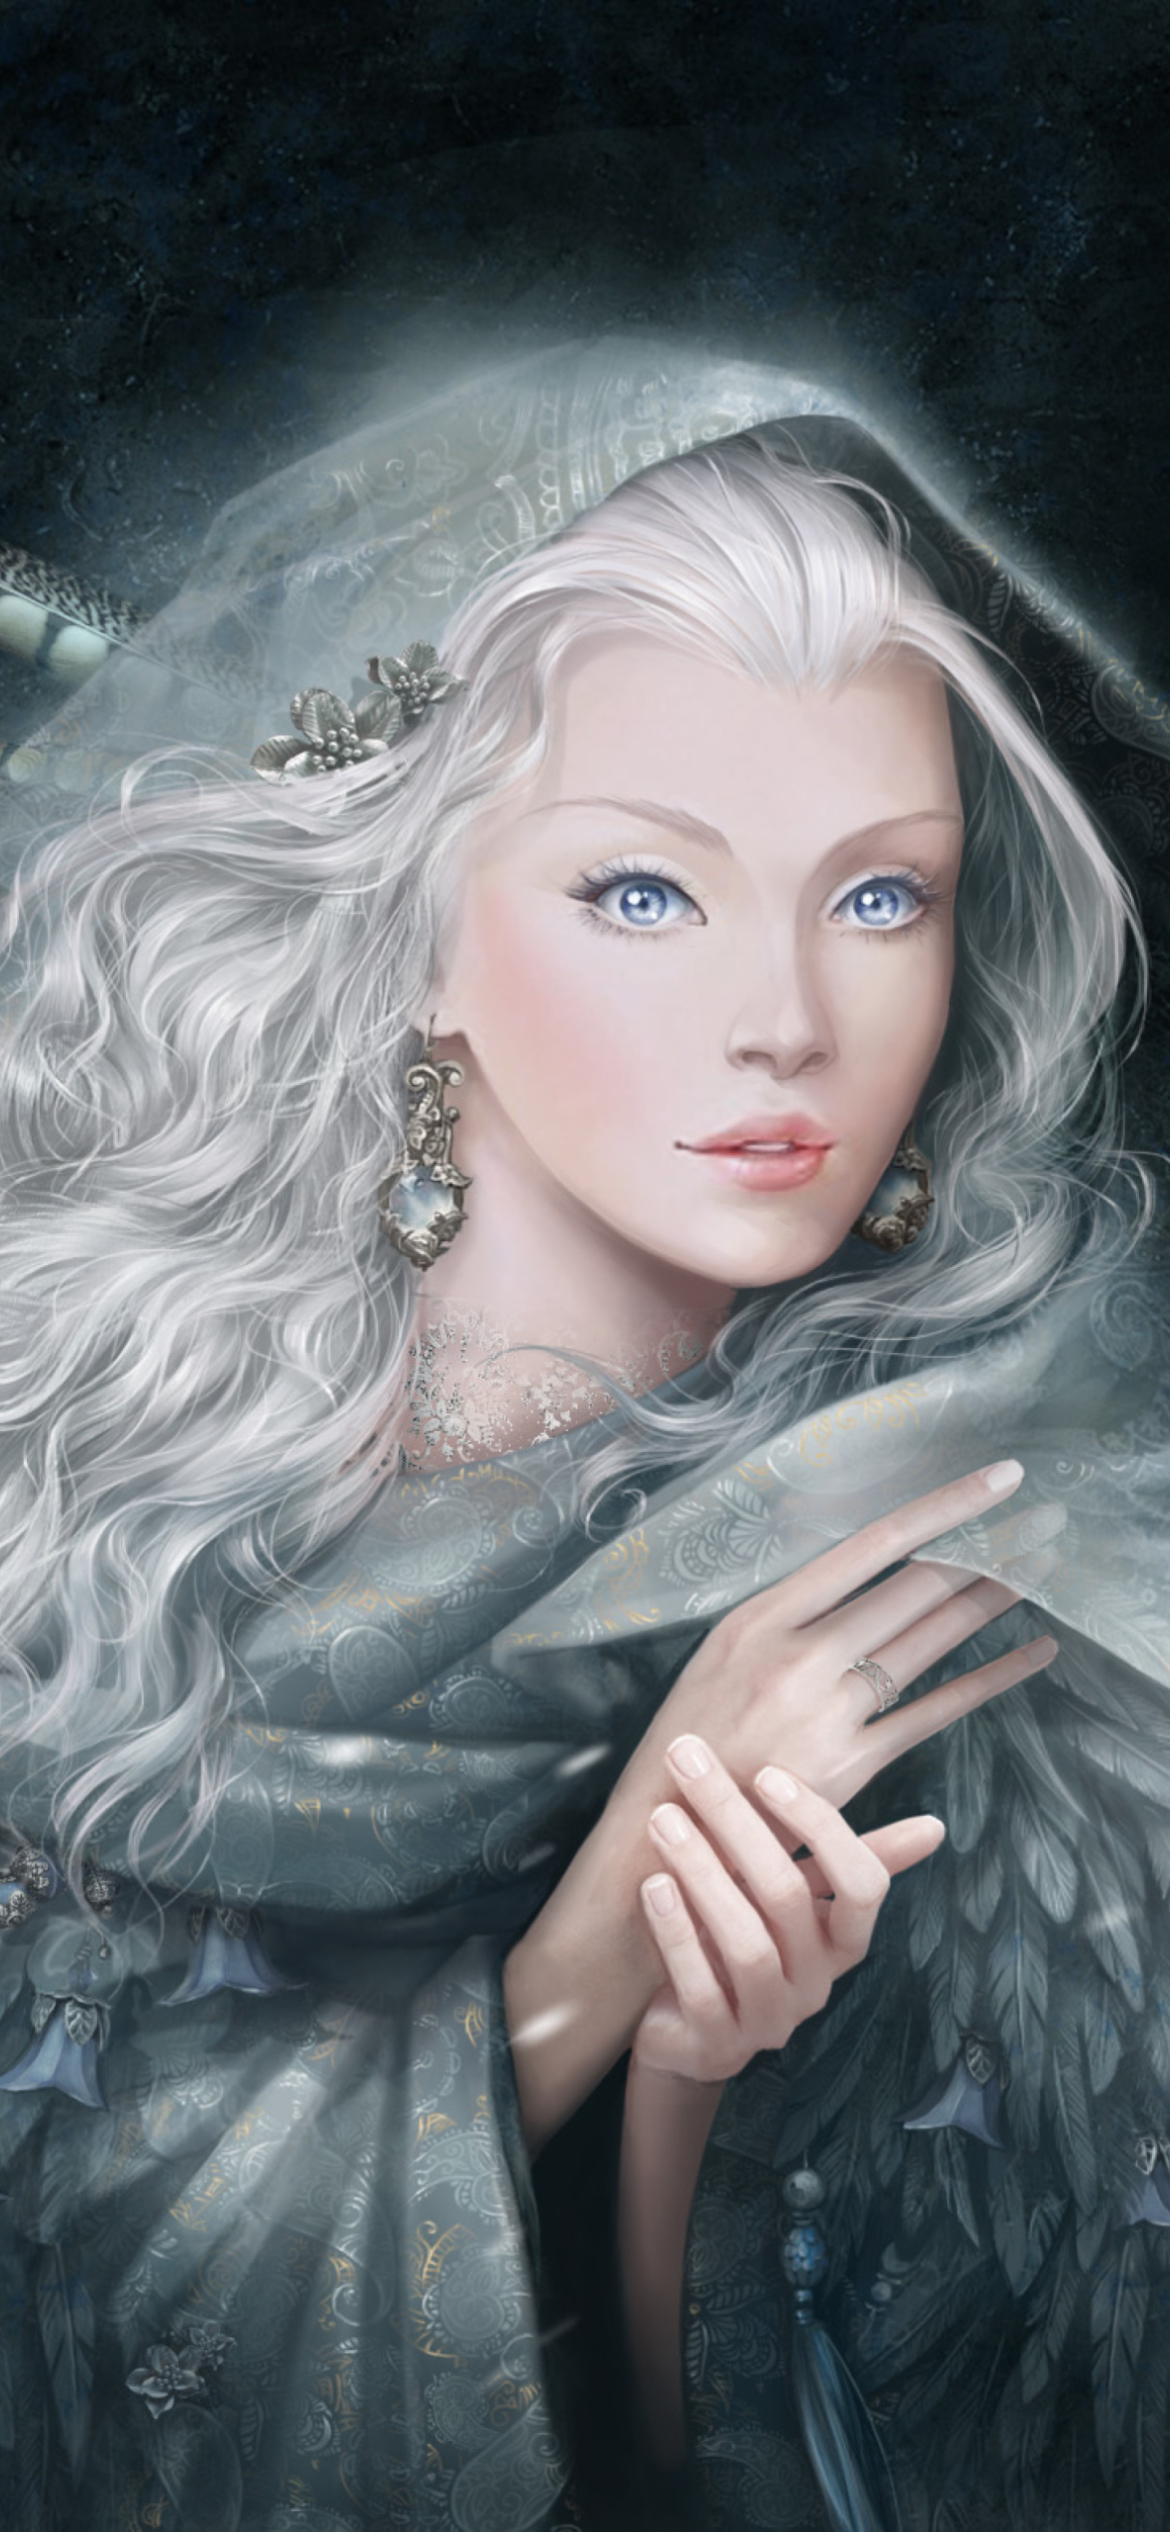 White Fantasy Princess wallpaper 1170x2532